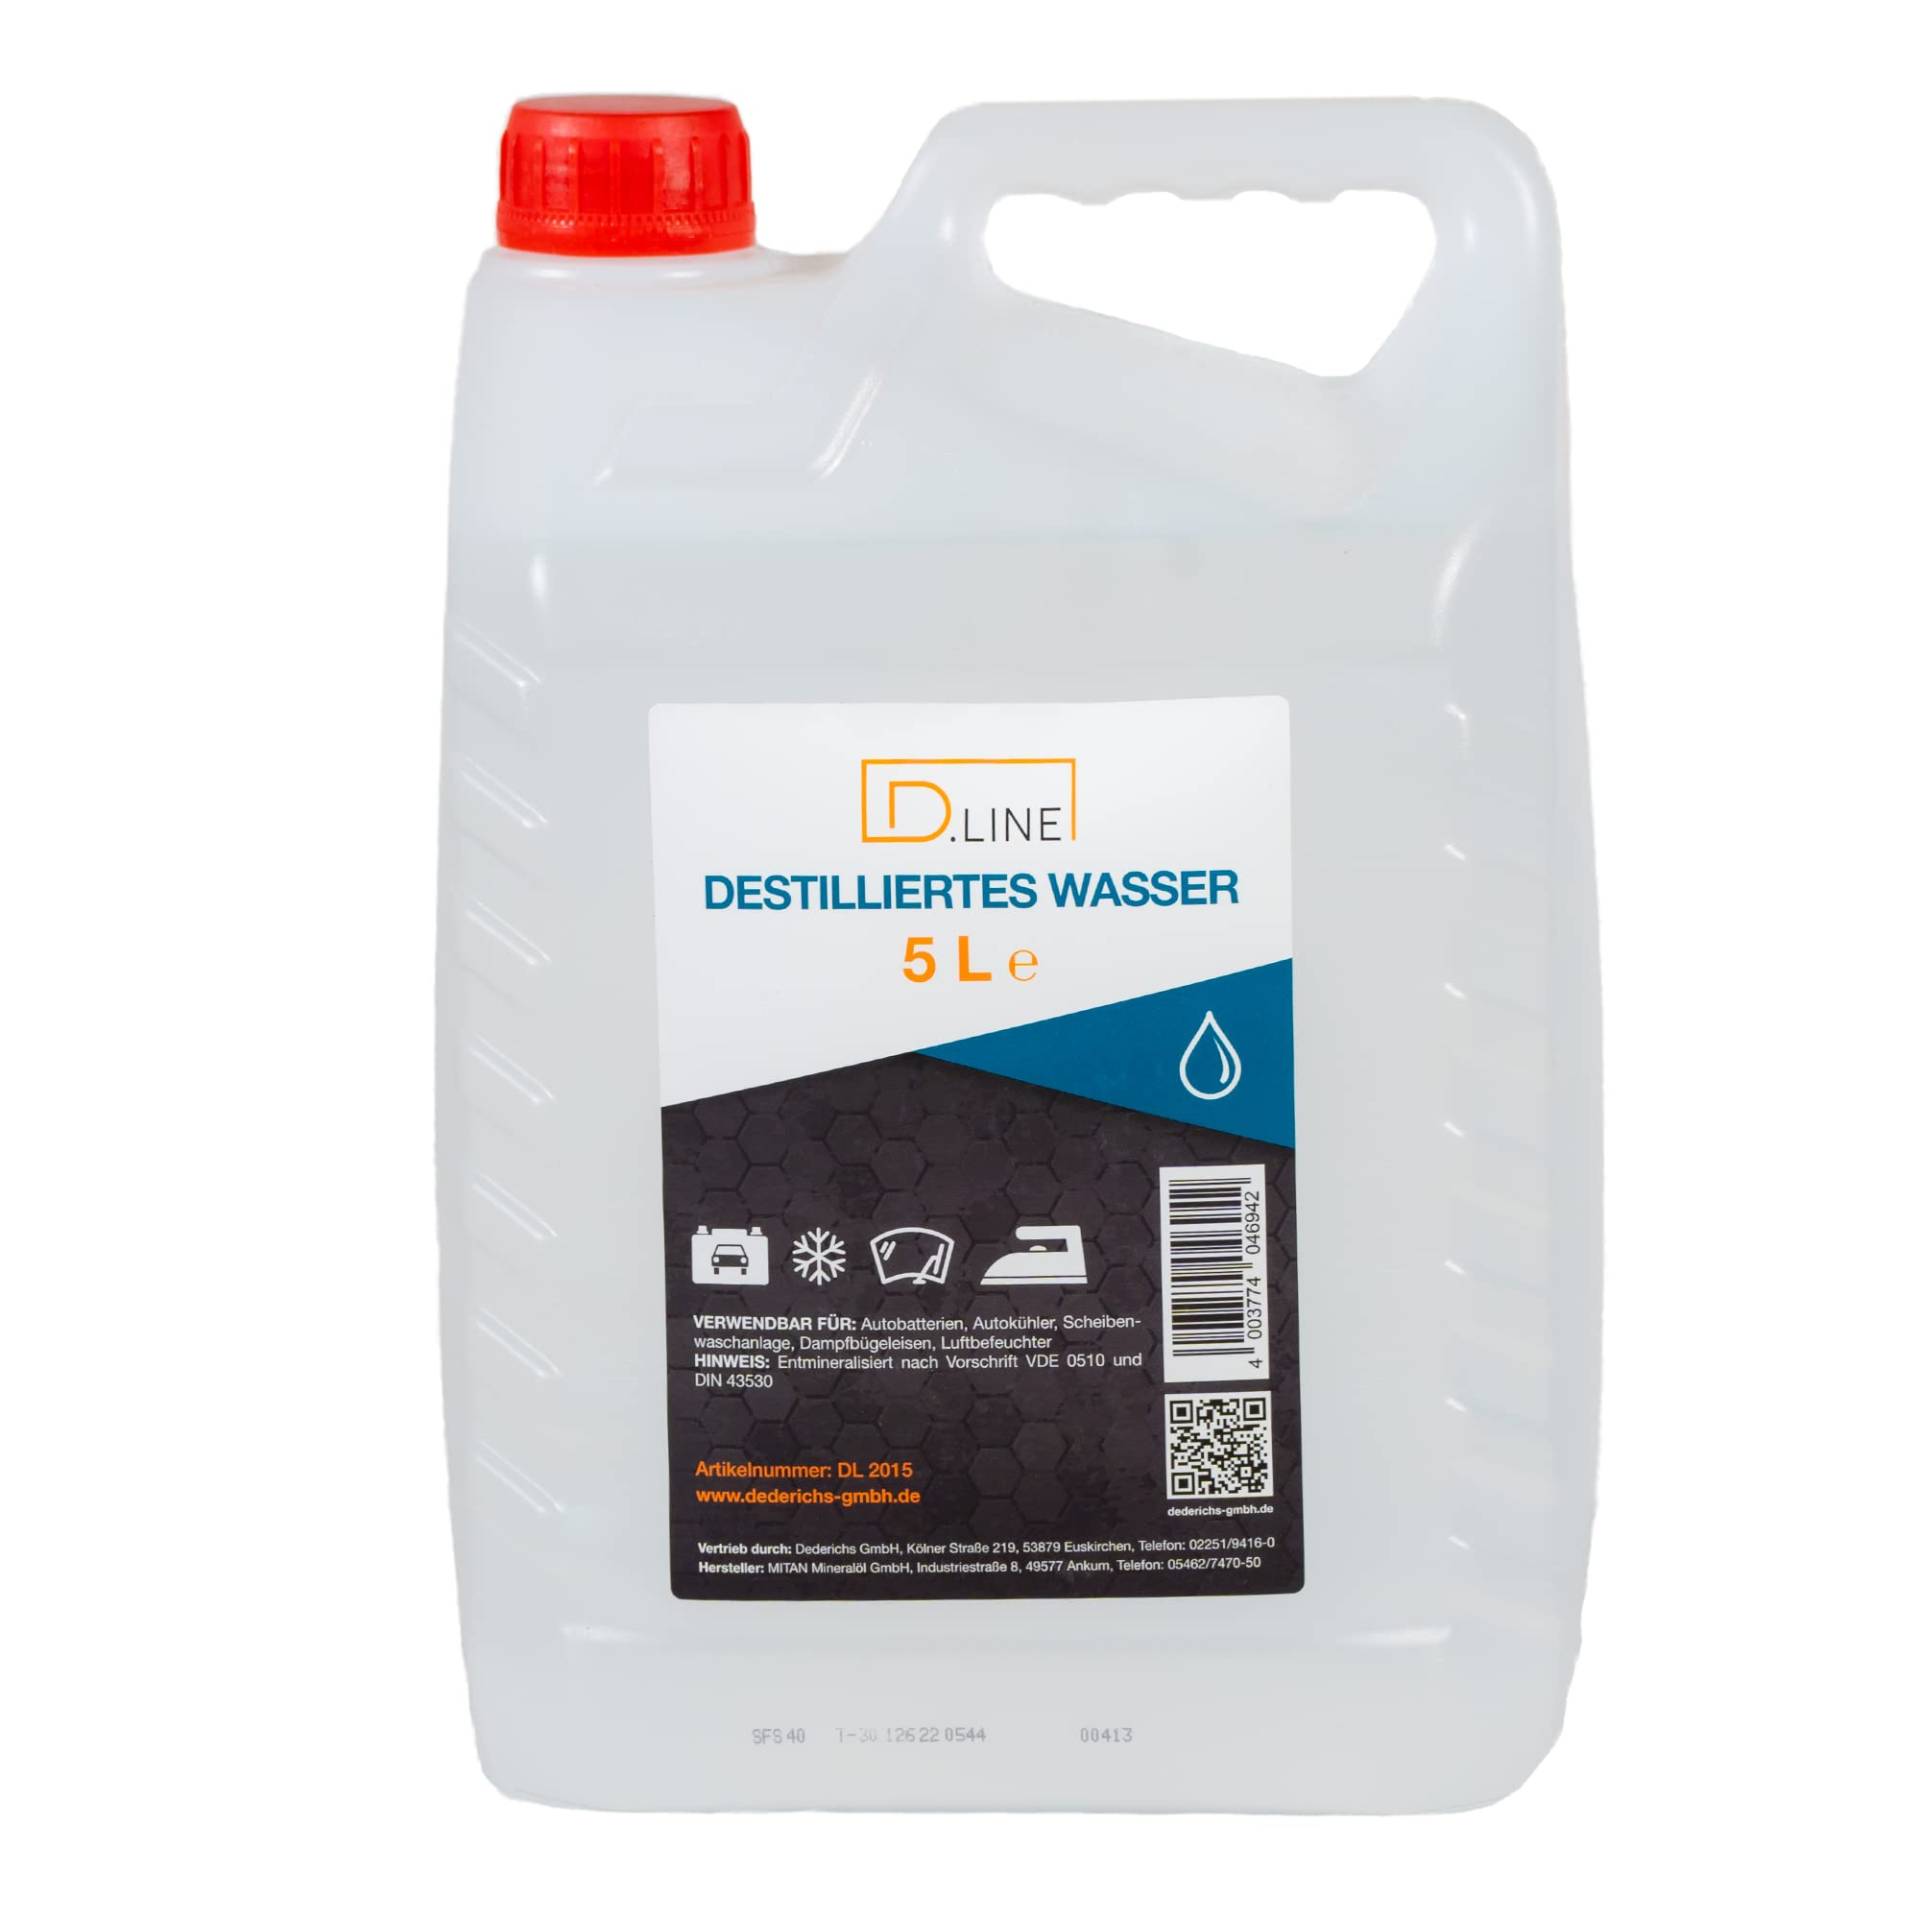 D.LINE Destilliertes Wasser 5 Liter, Entmineralisiert nach Vorschrift VDE 0510 und DIN 43530 (1 x 5 Liter) von D.LINE